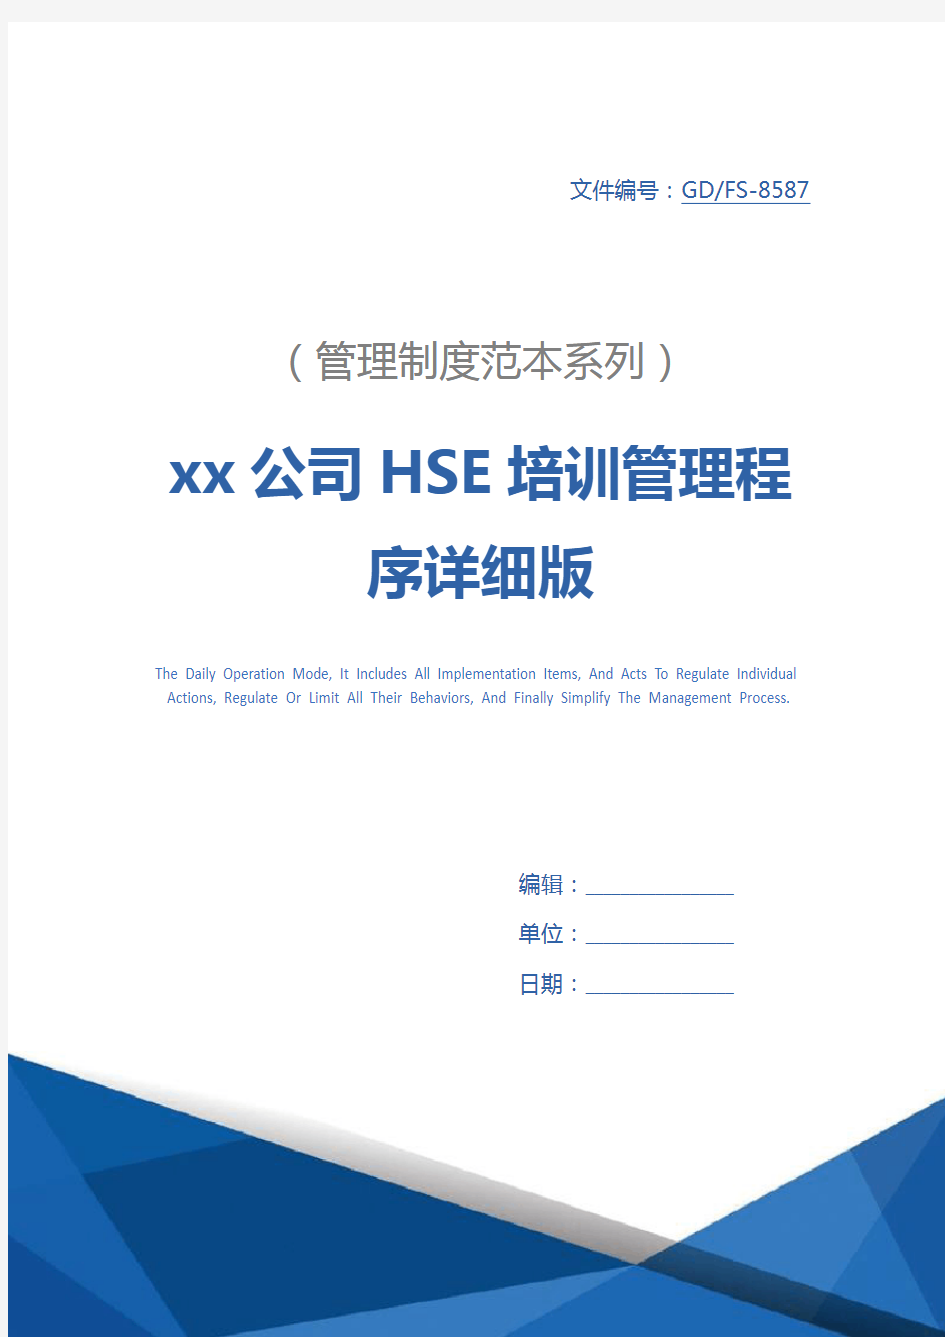 xx公司HSE培训管理程序详细版